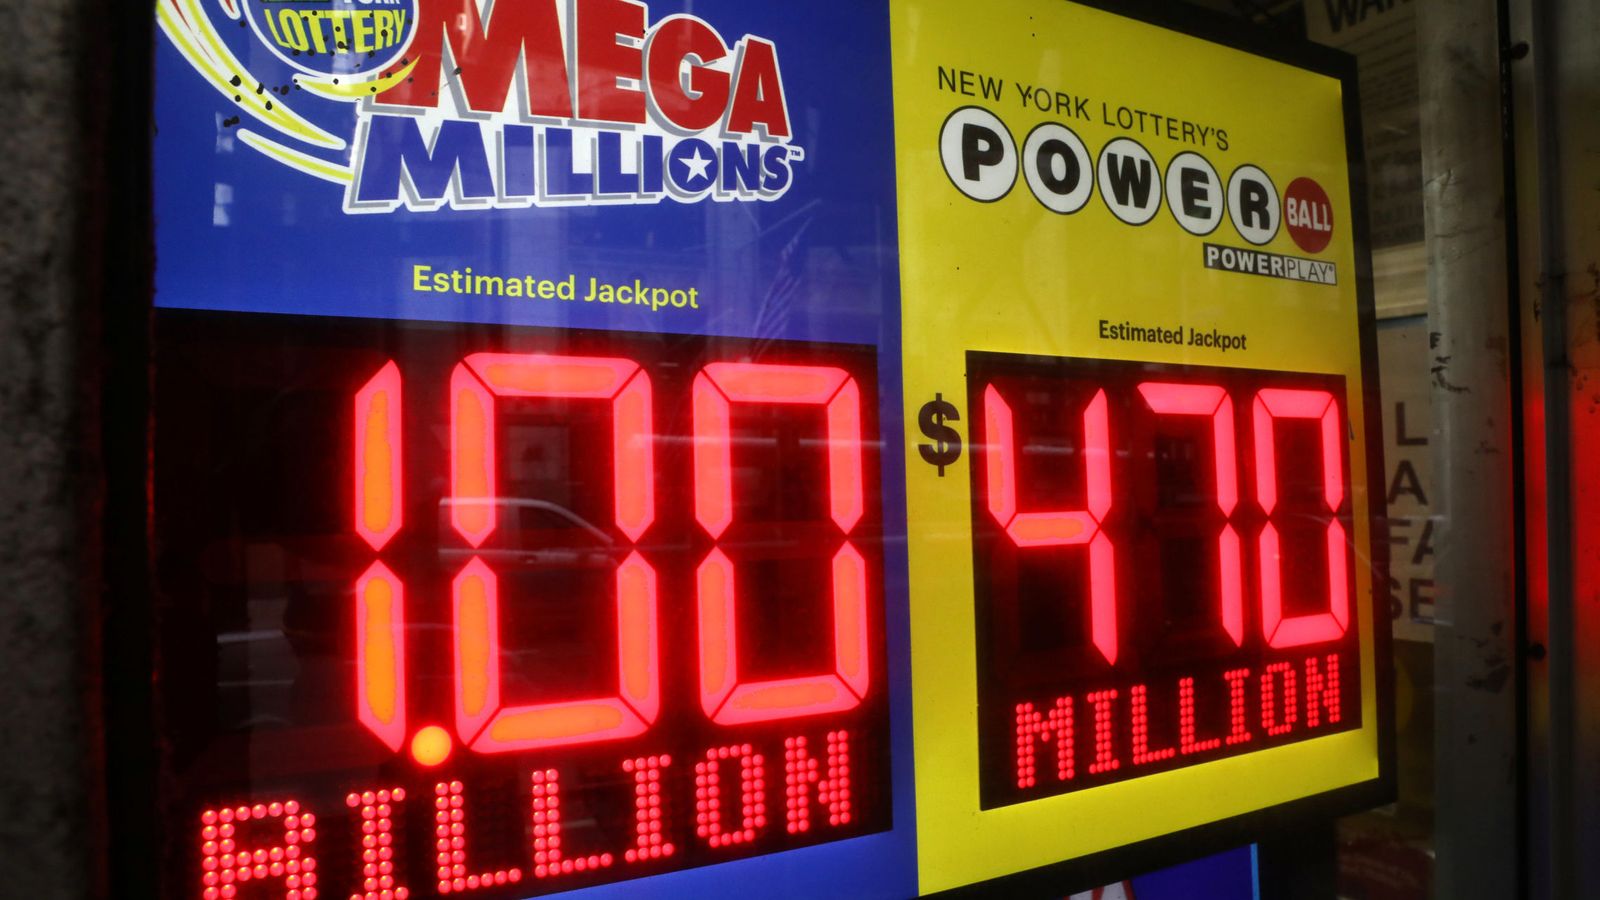 Foto: Los superbotes son habituales en las loterías norteamericanas (Reuters/Mike Sugar)